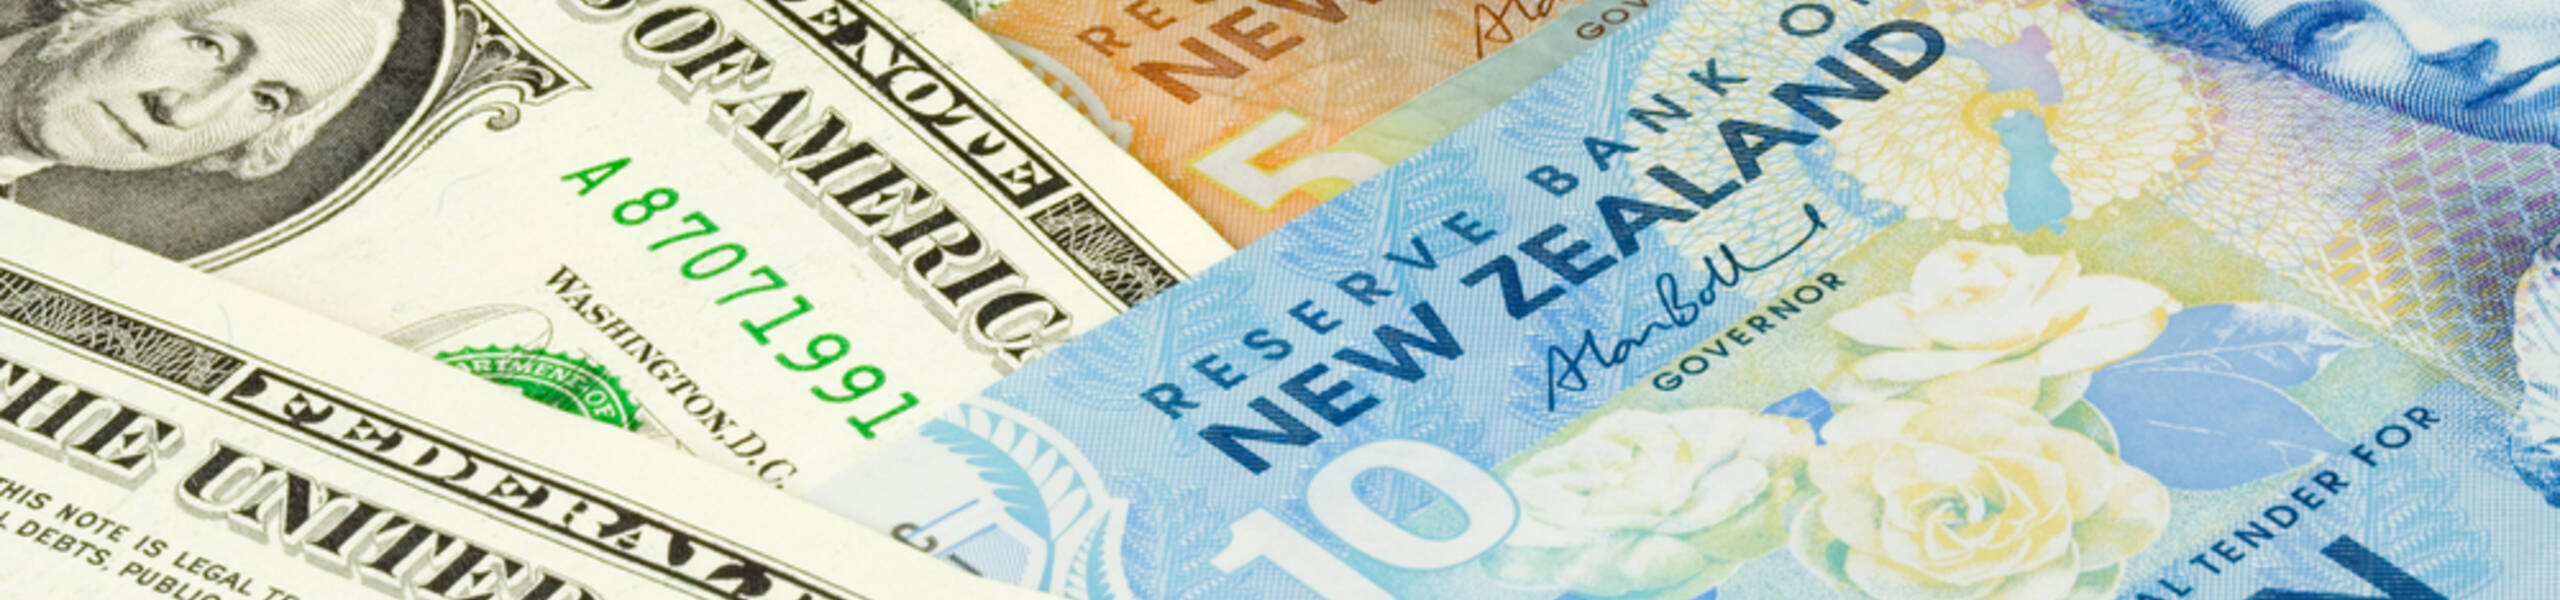 Kế hoạch giao dịch cặp ngoại tệ NZDUSD ngày 05/04/2019